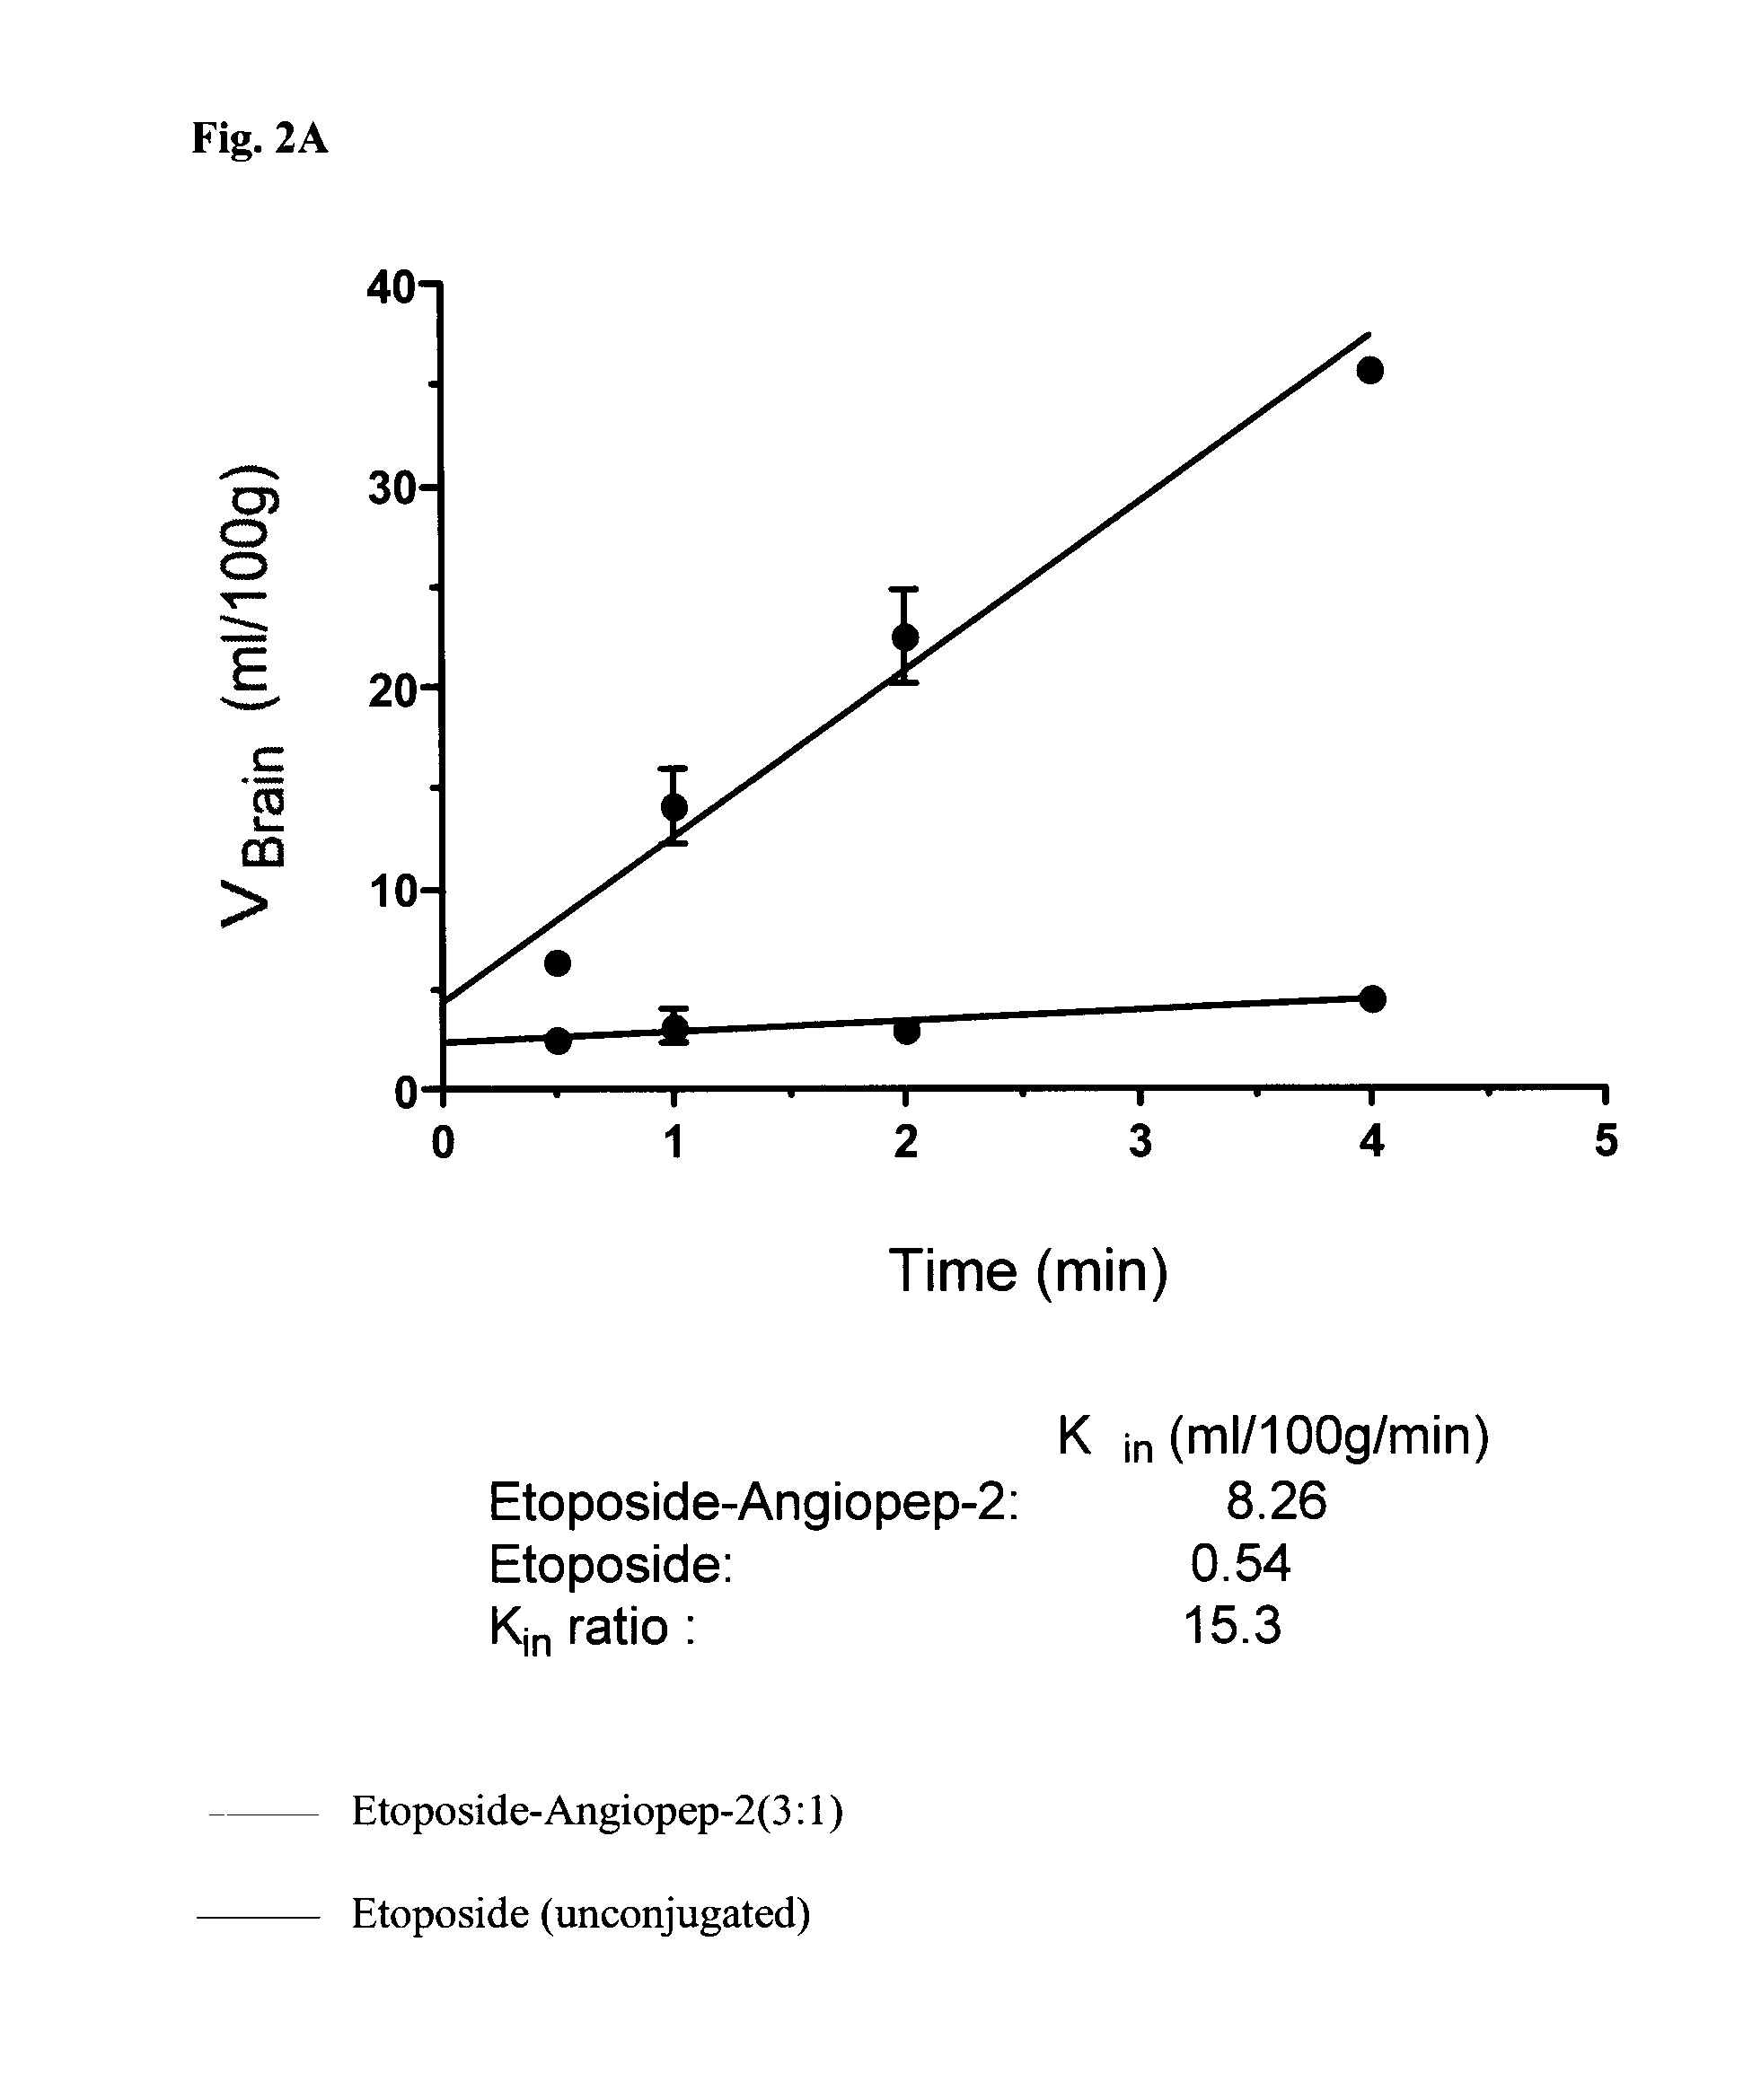 Etoposide and doxorubicin conjugates for drug delivery